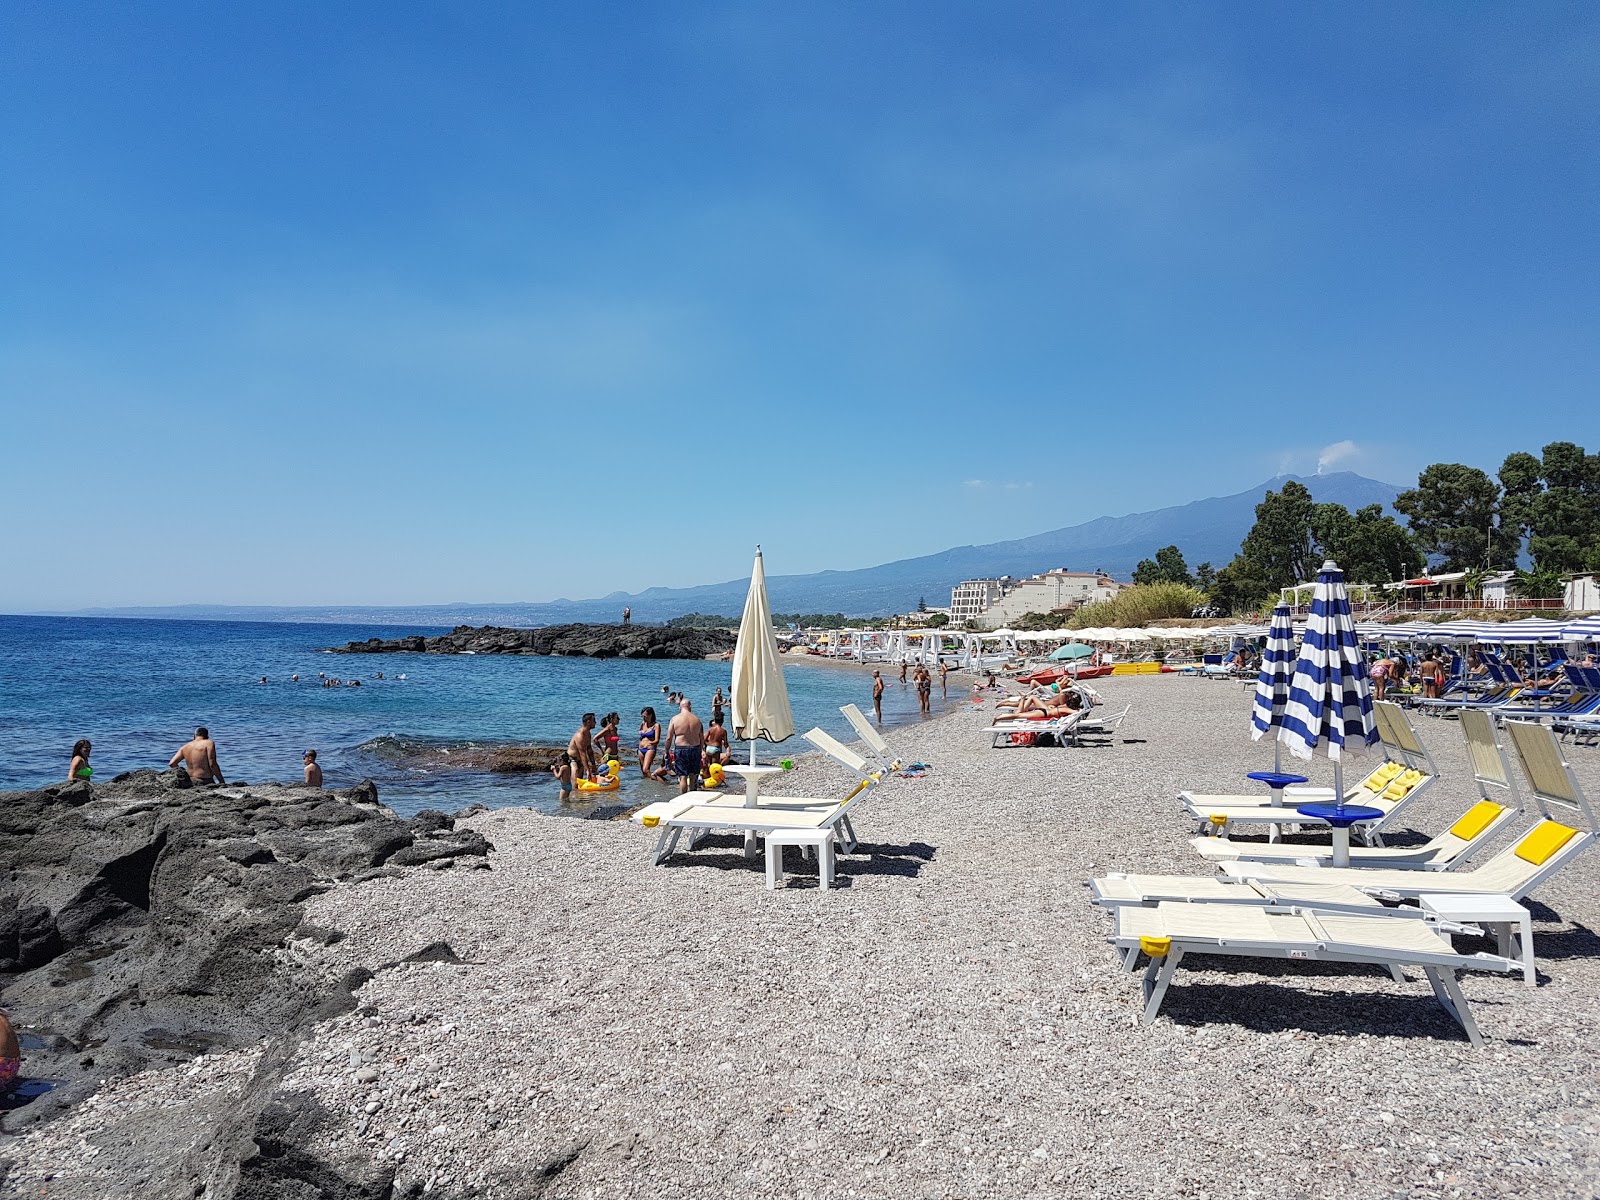 Recanati beach'in fotoğrafı plaj tatil beldesi alanı